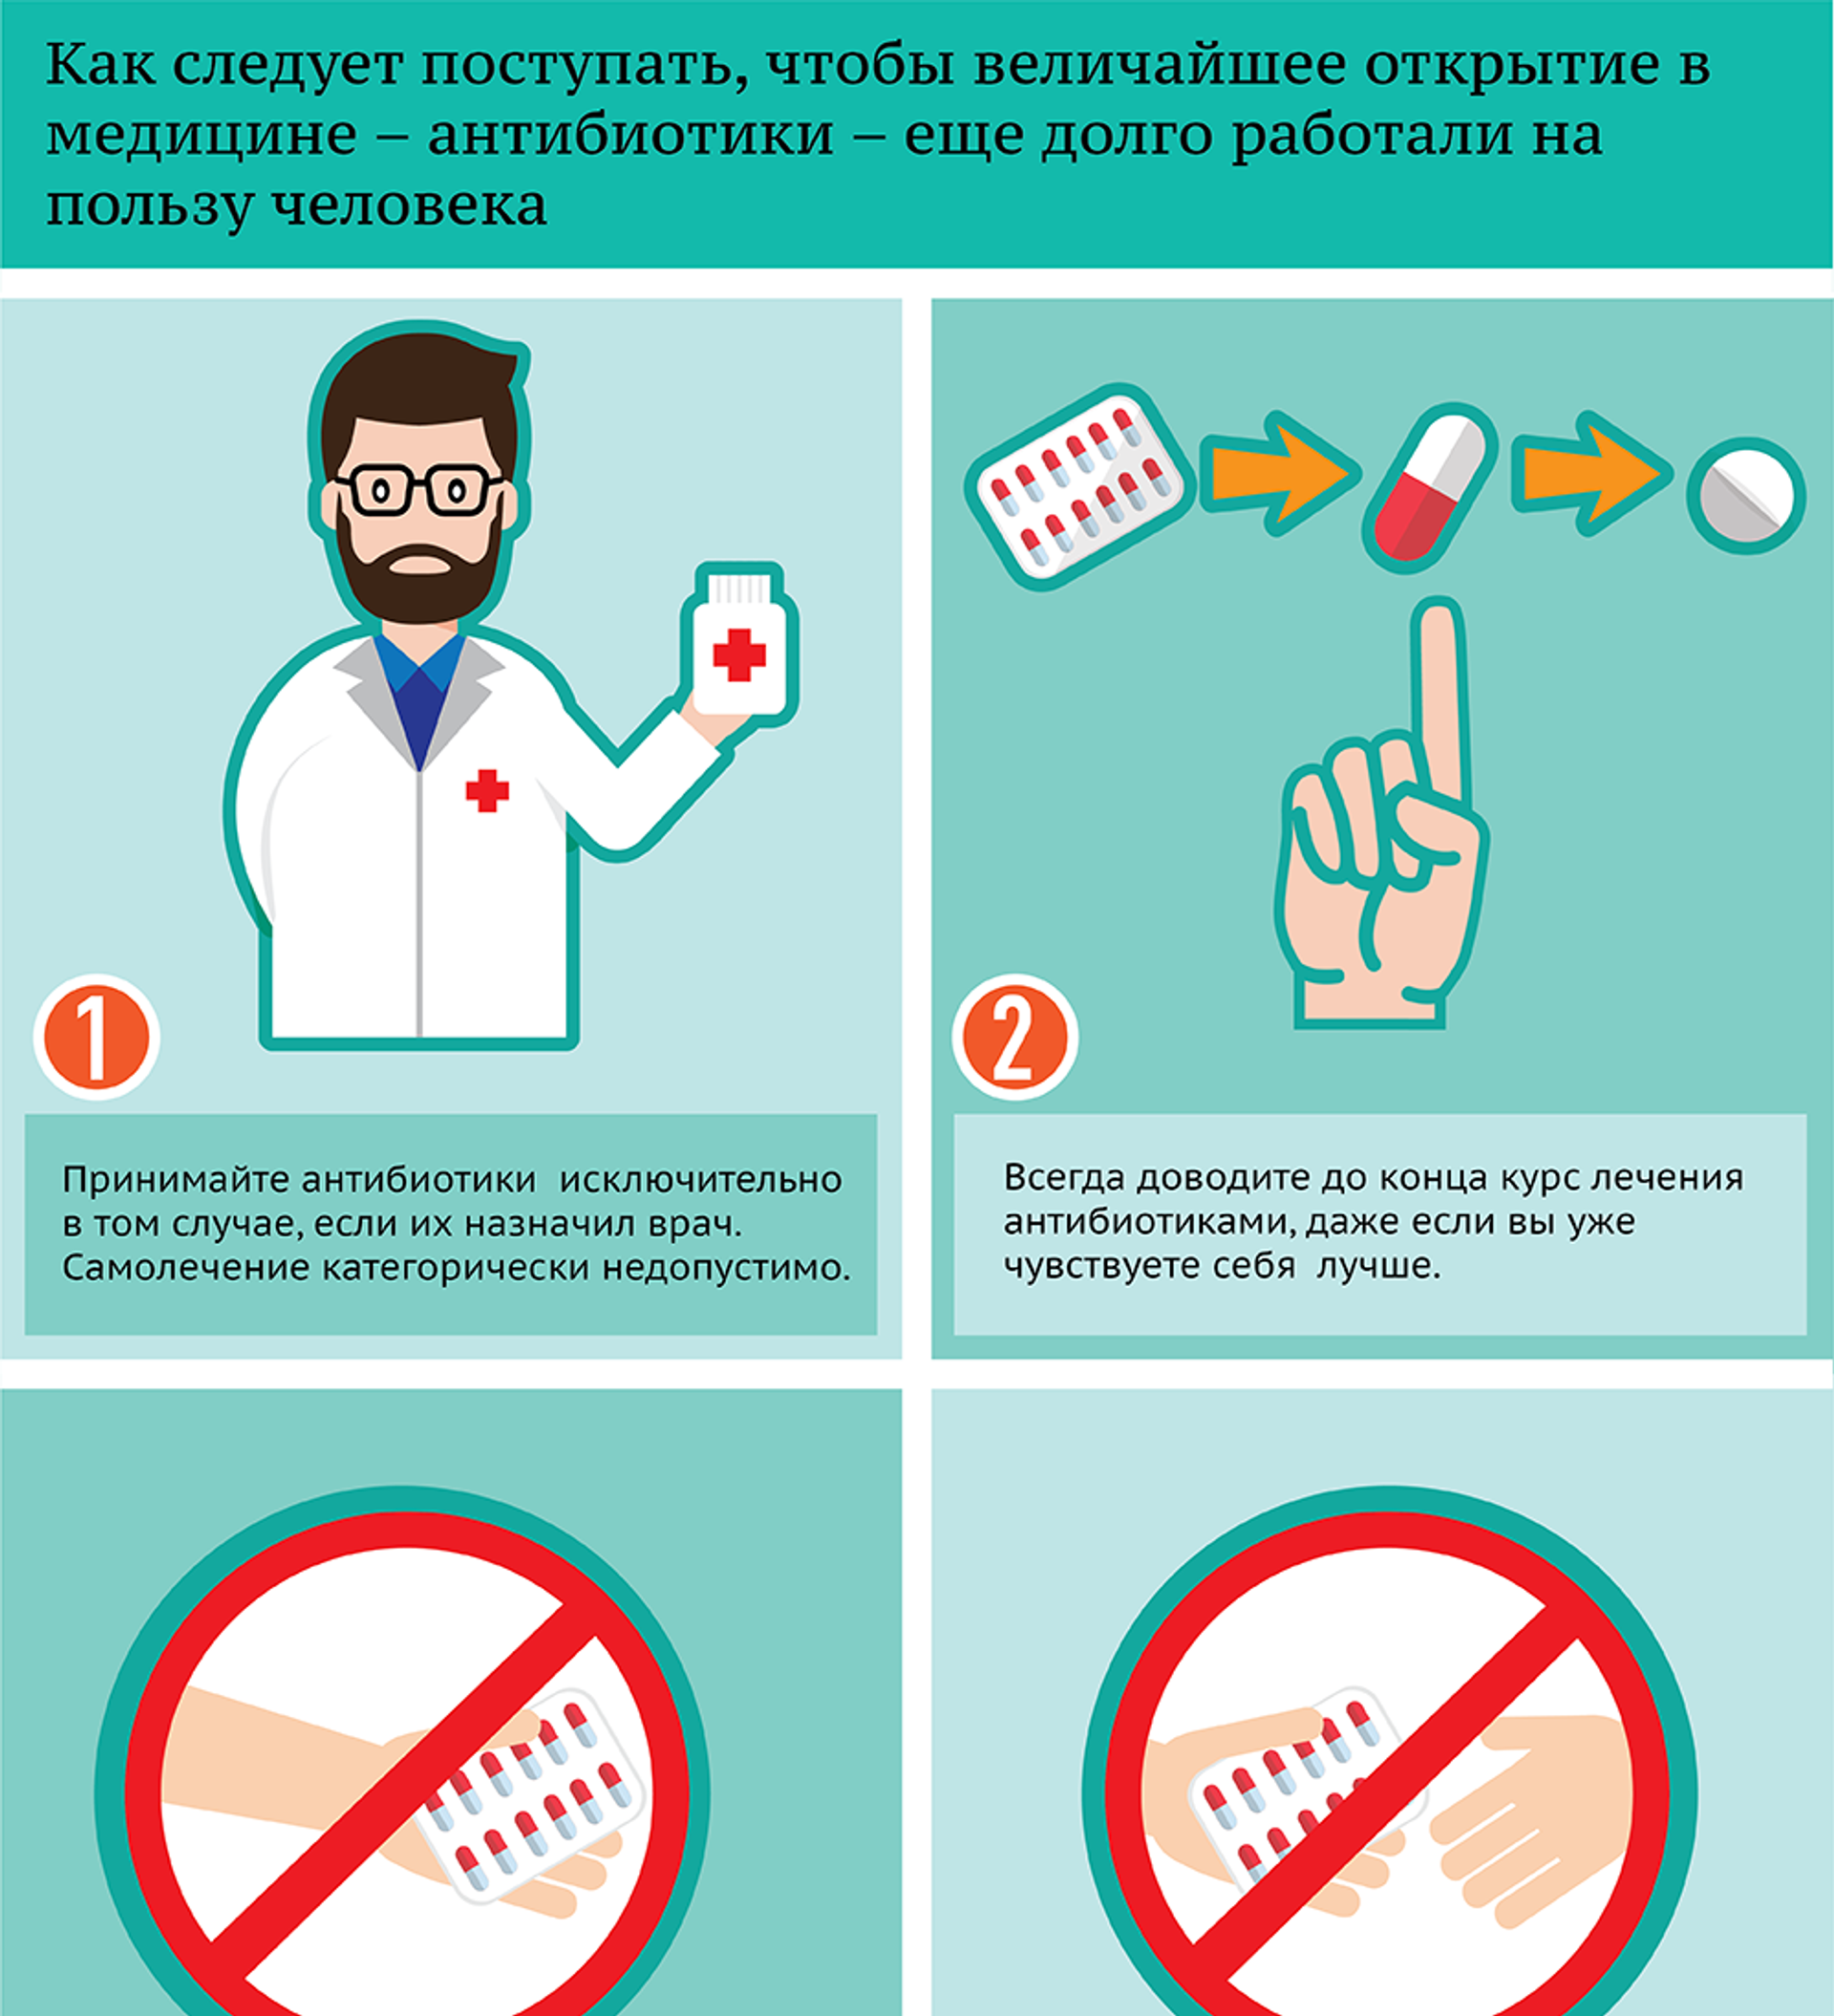 Как правильно принимать антибиотики без вреда